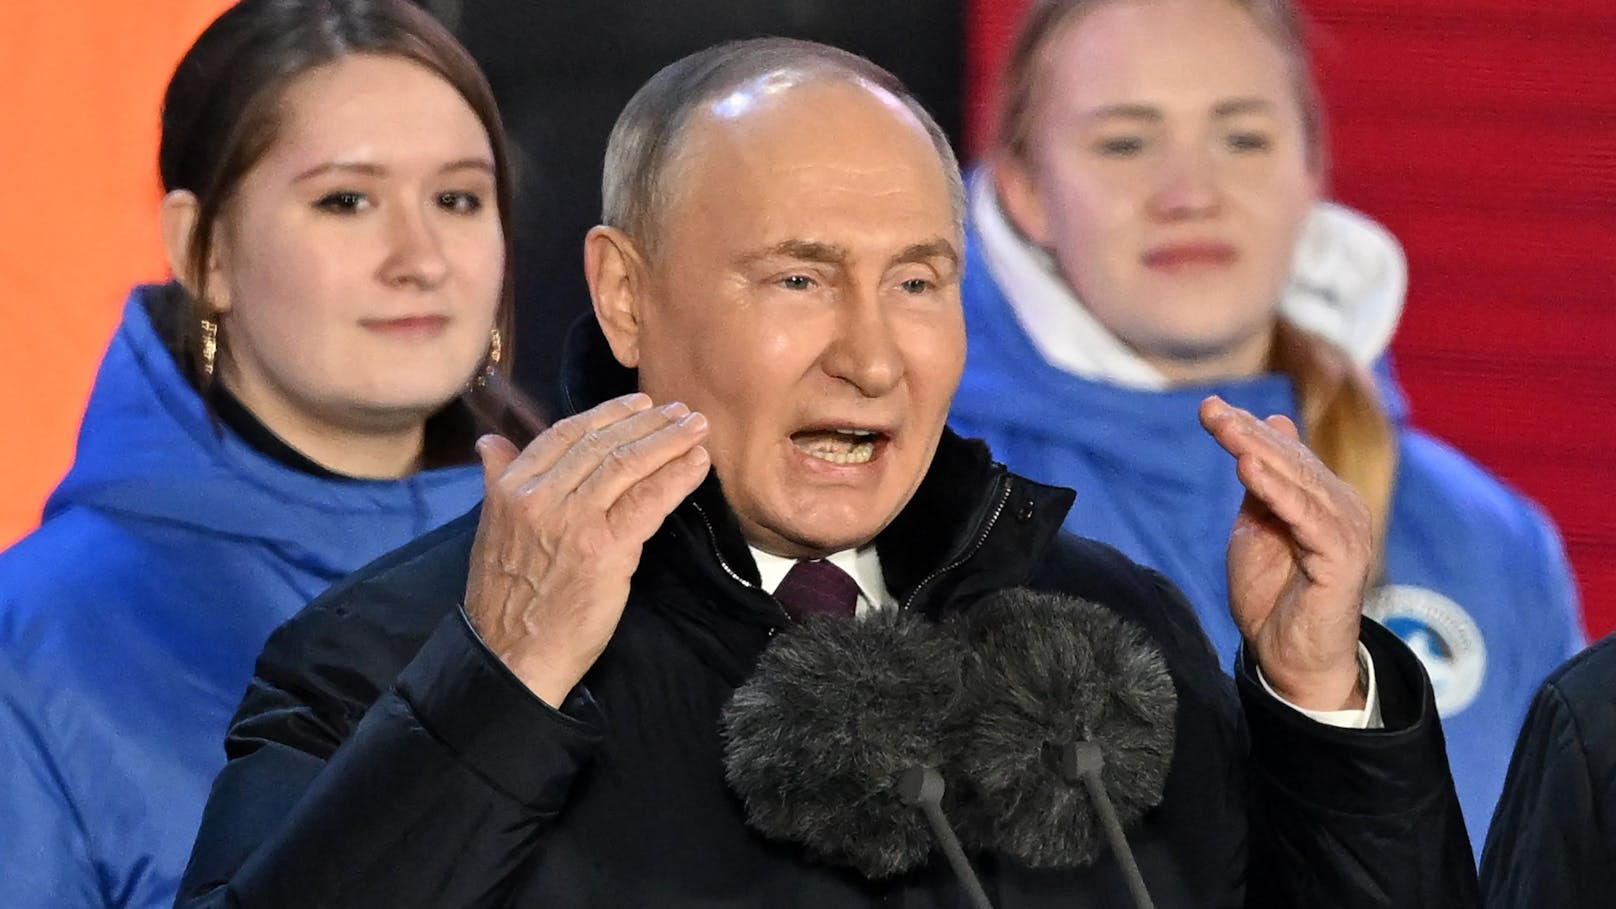 Wahre Pläne nach Wahl – das hat Putin jetzt vor